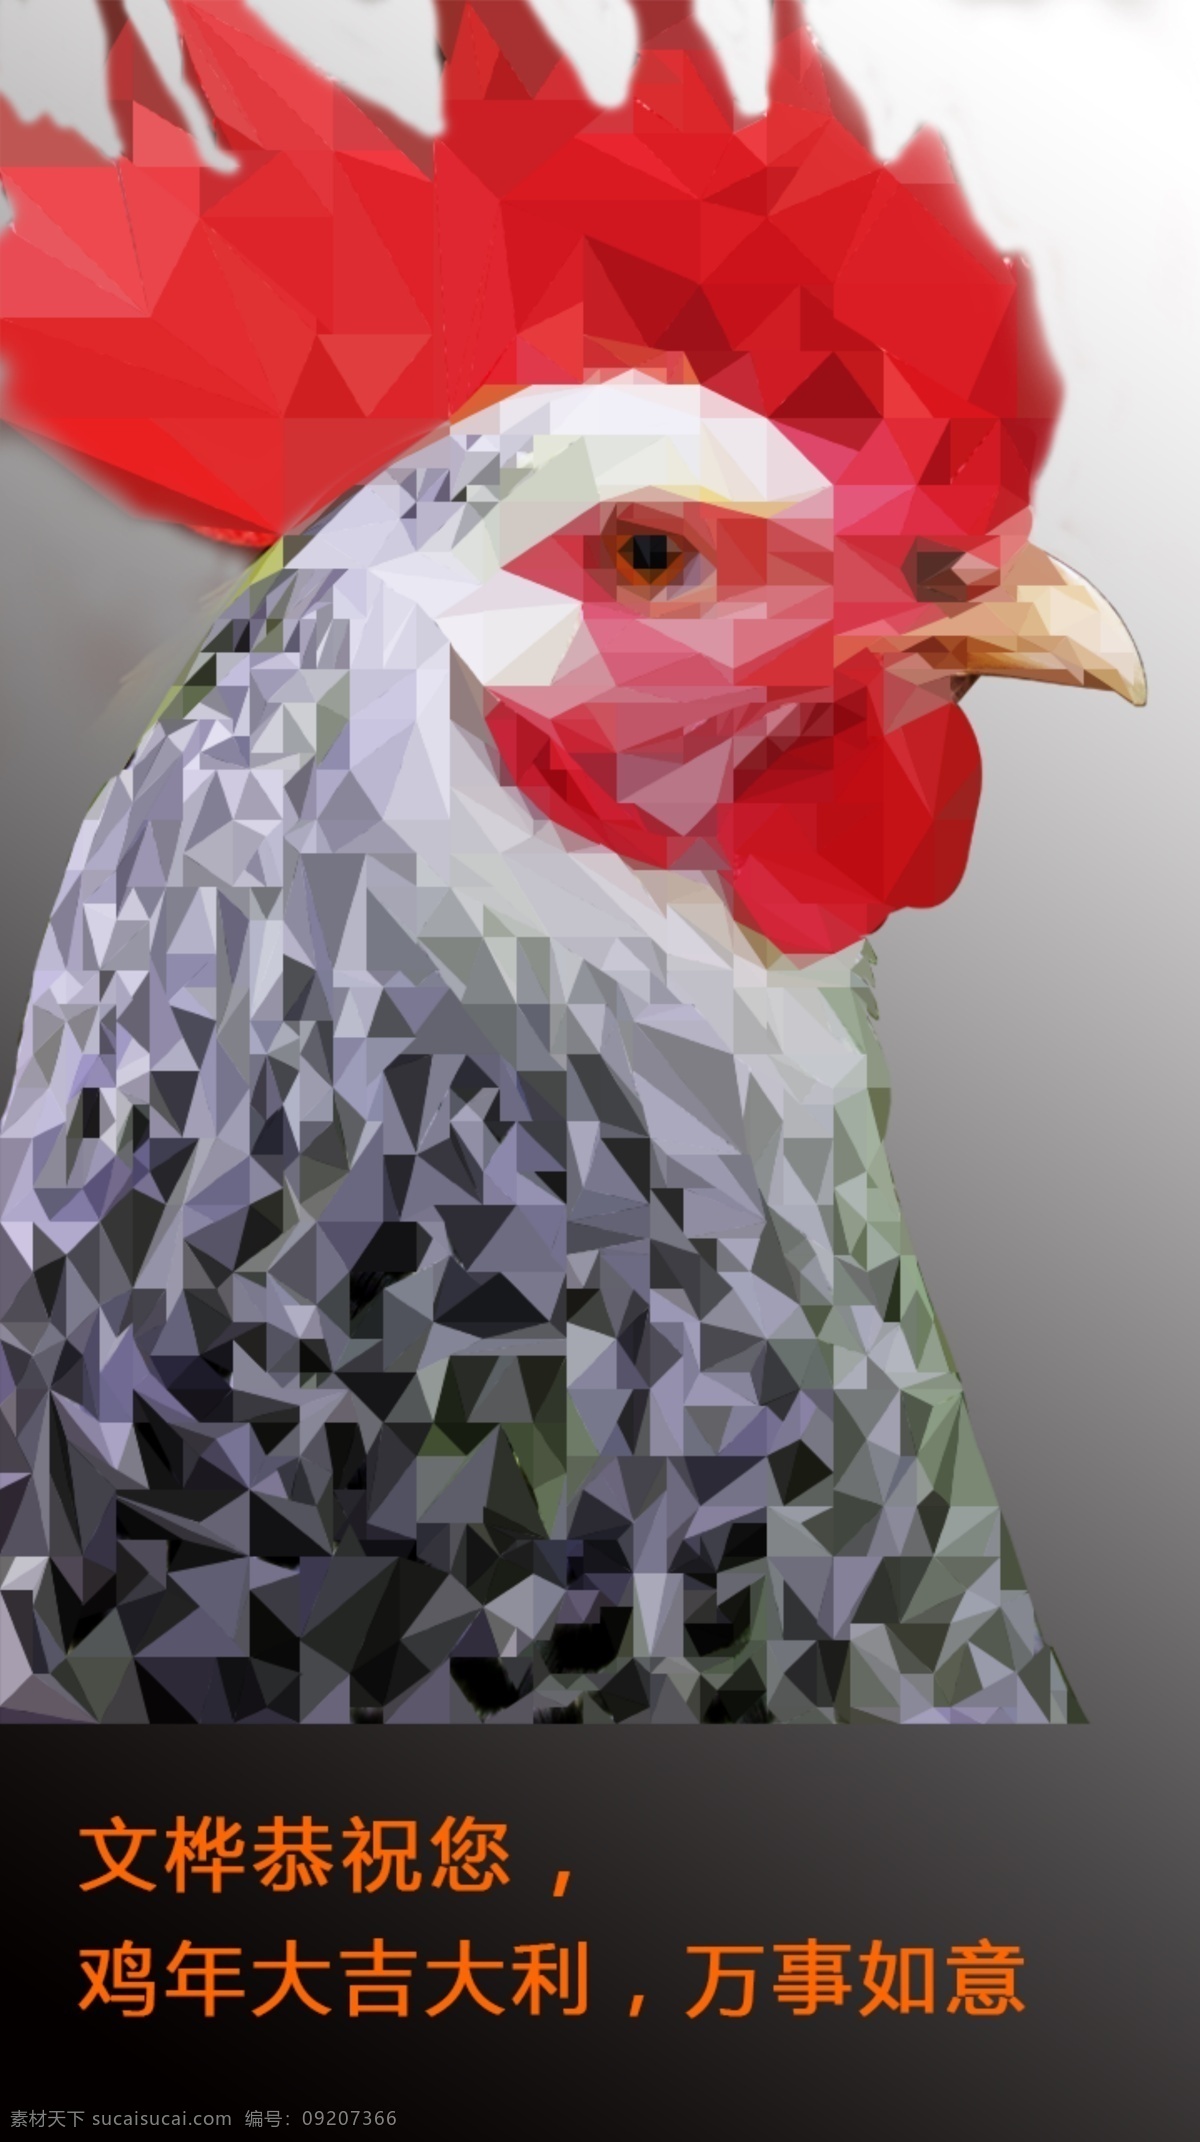 几何鸡头图案 用ps制作的 low poly 风格 海报 鸡年海报